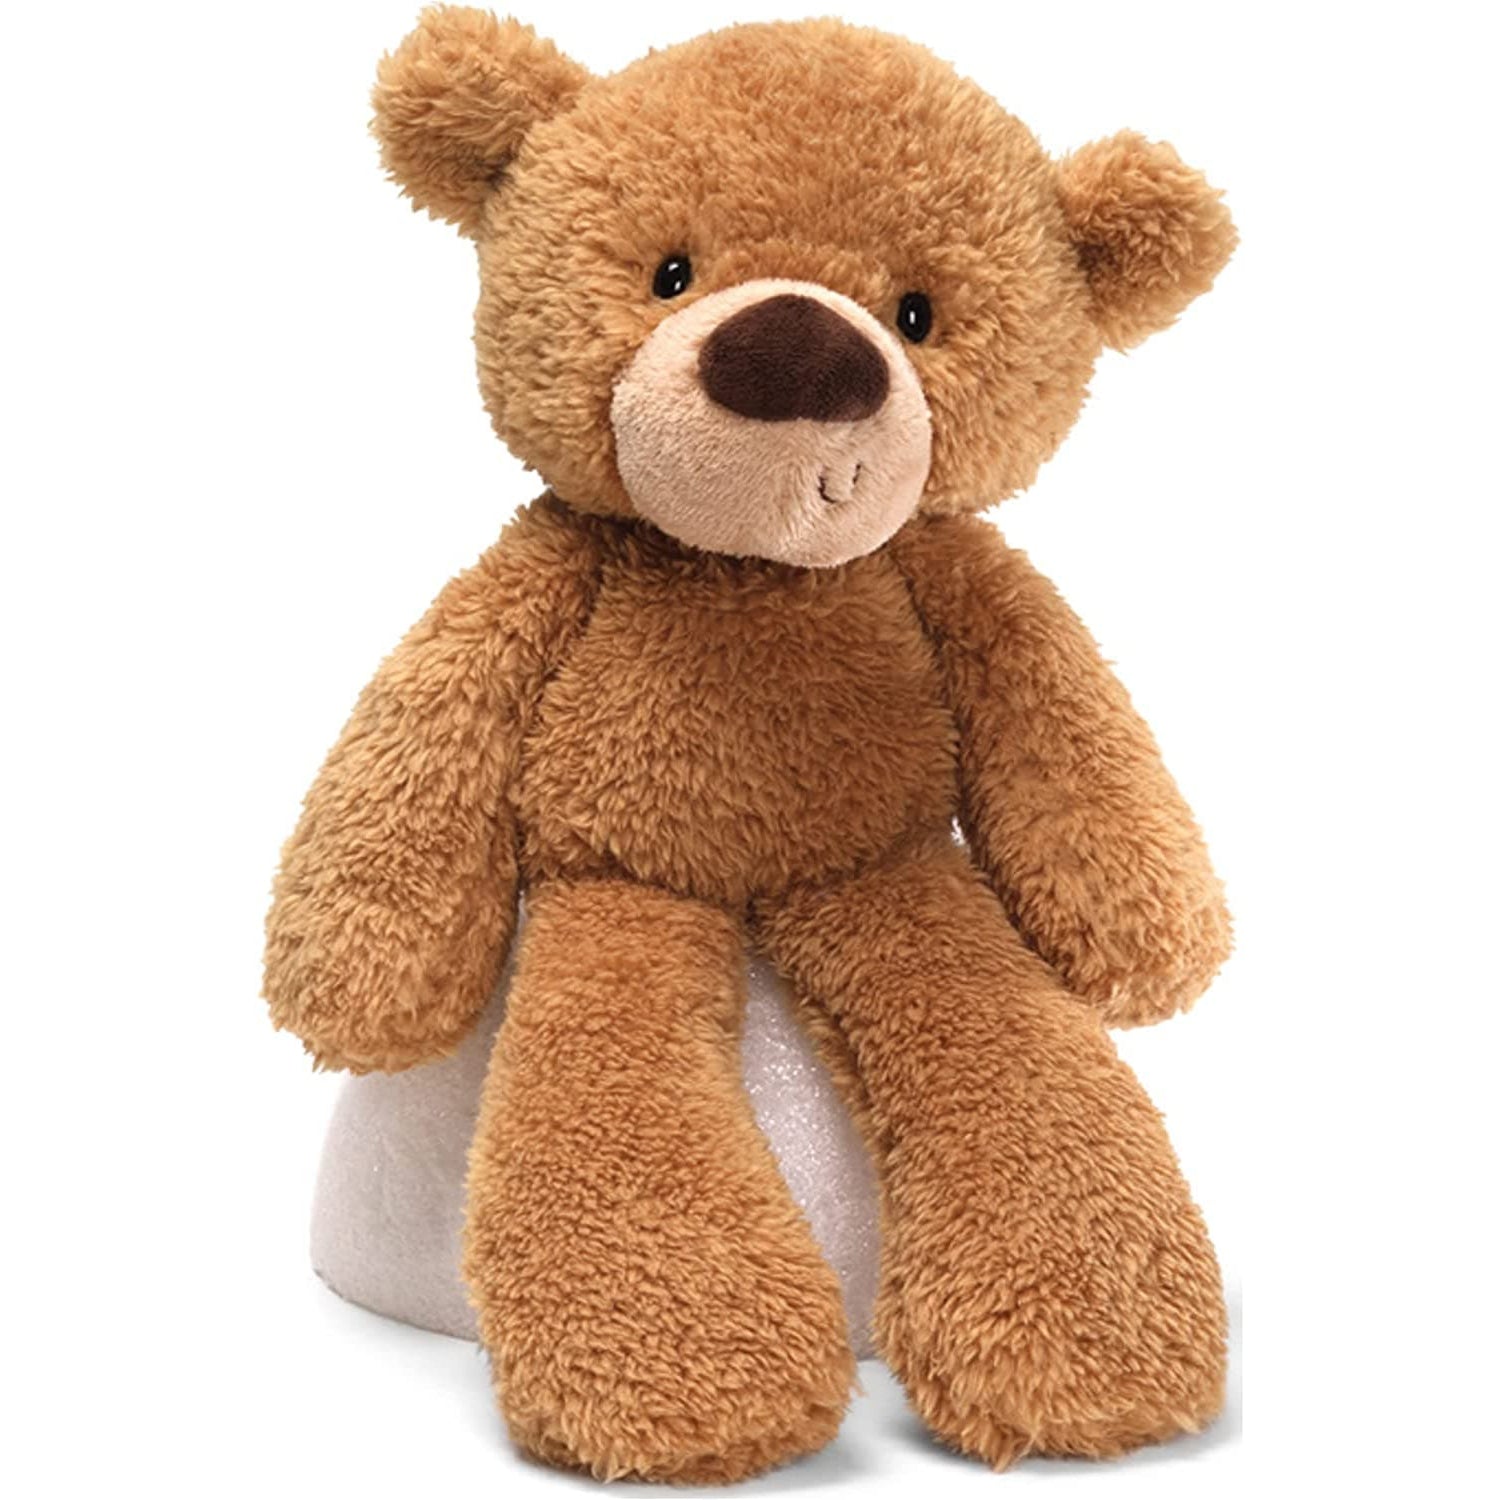 Gund-Fuzzy Teddy Bear - Beige-6047547-13.5